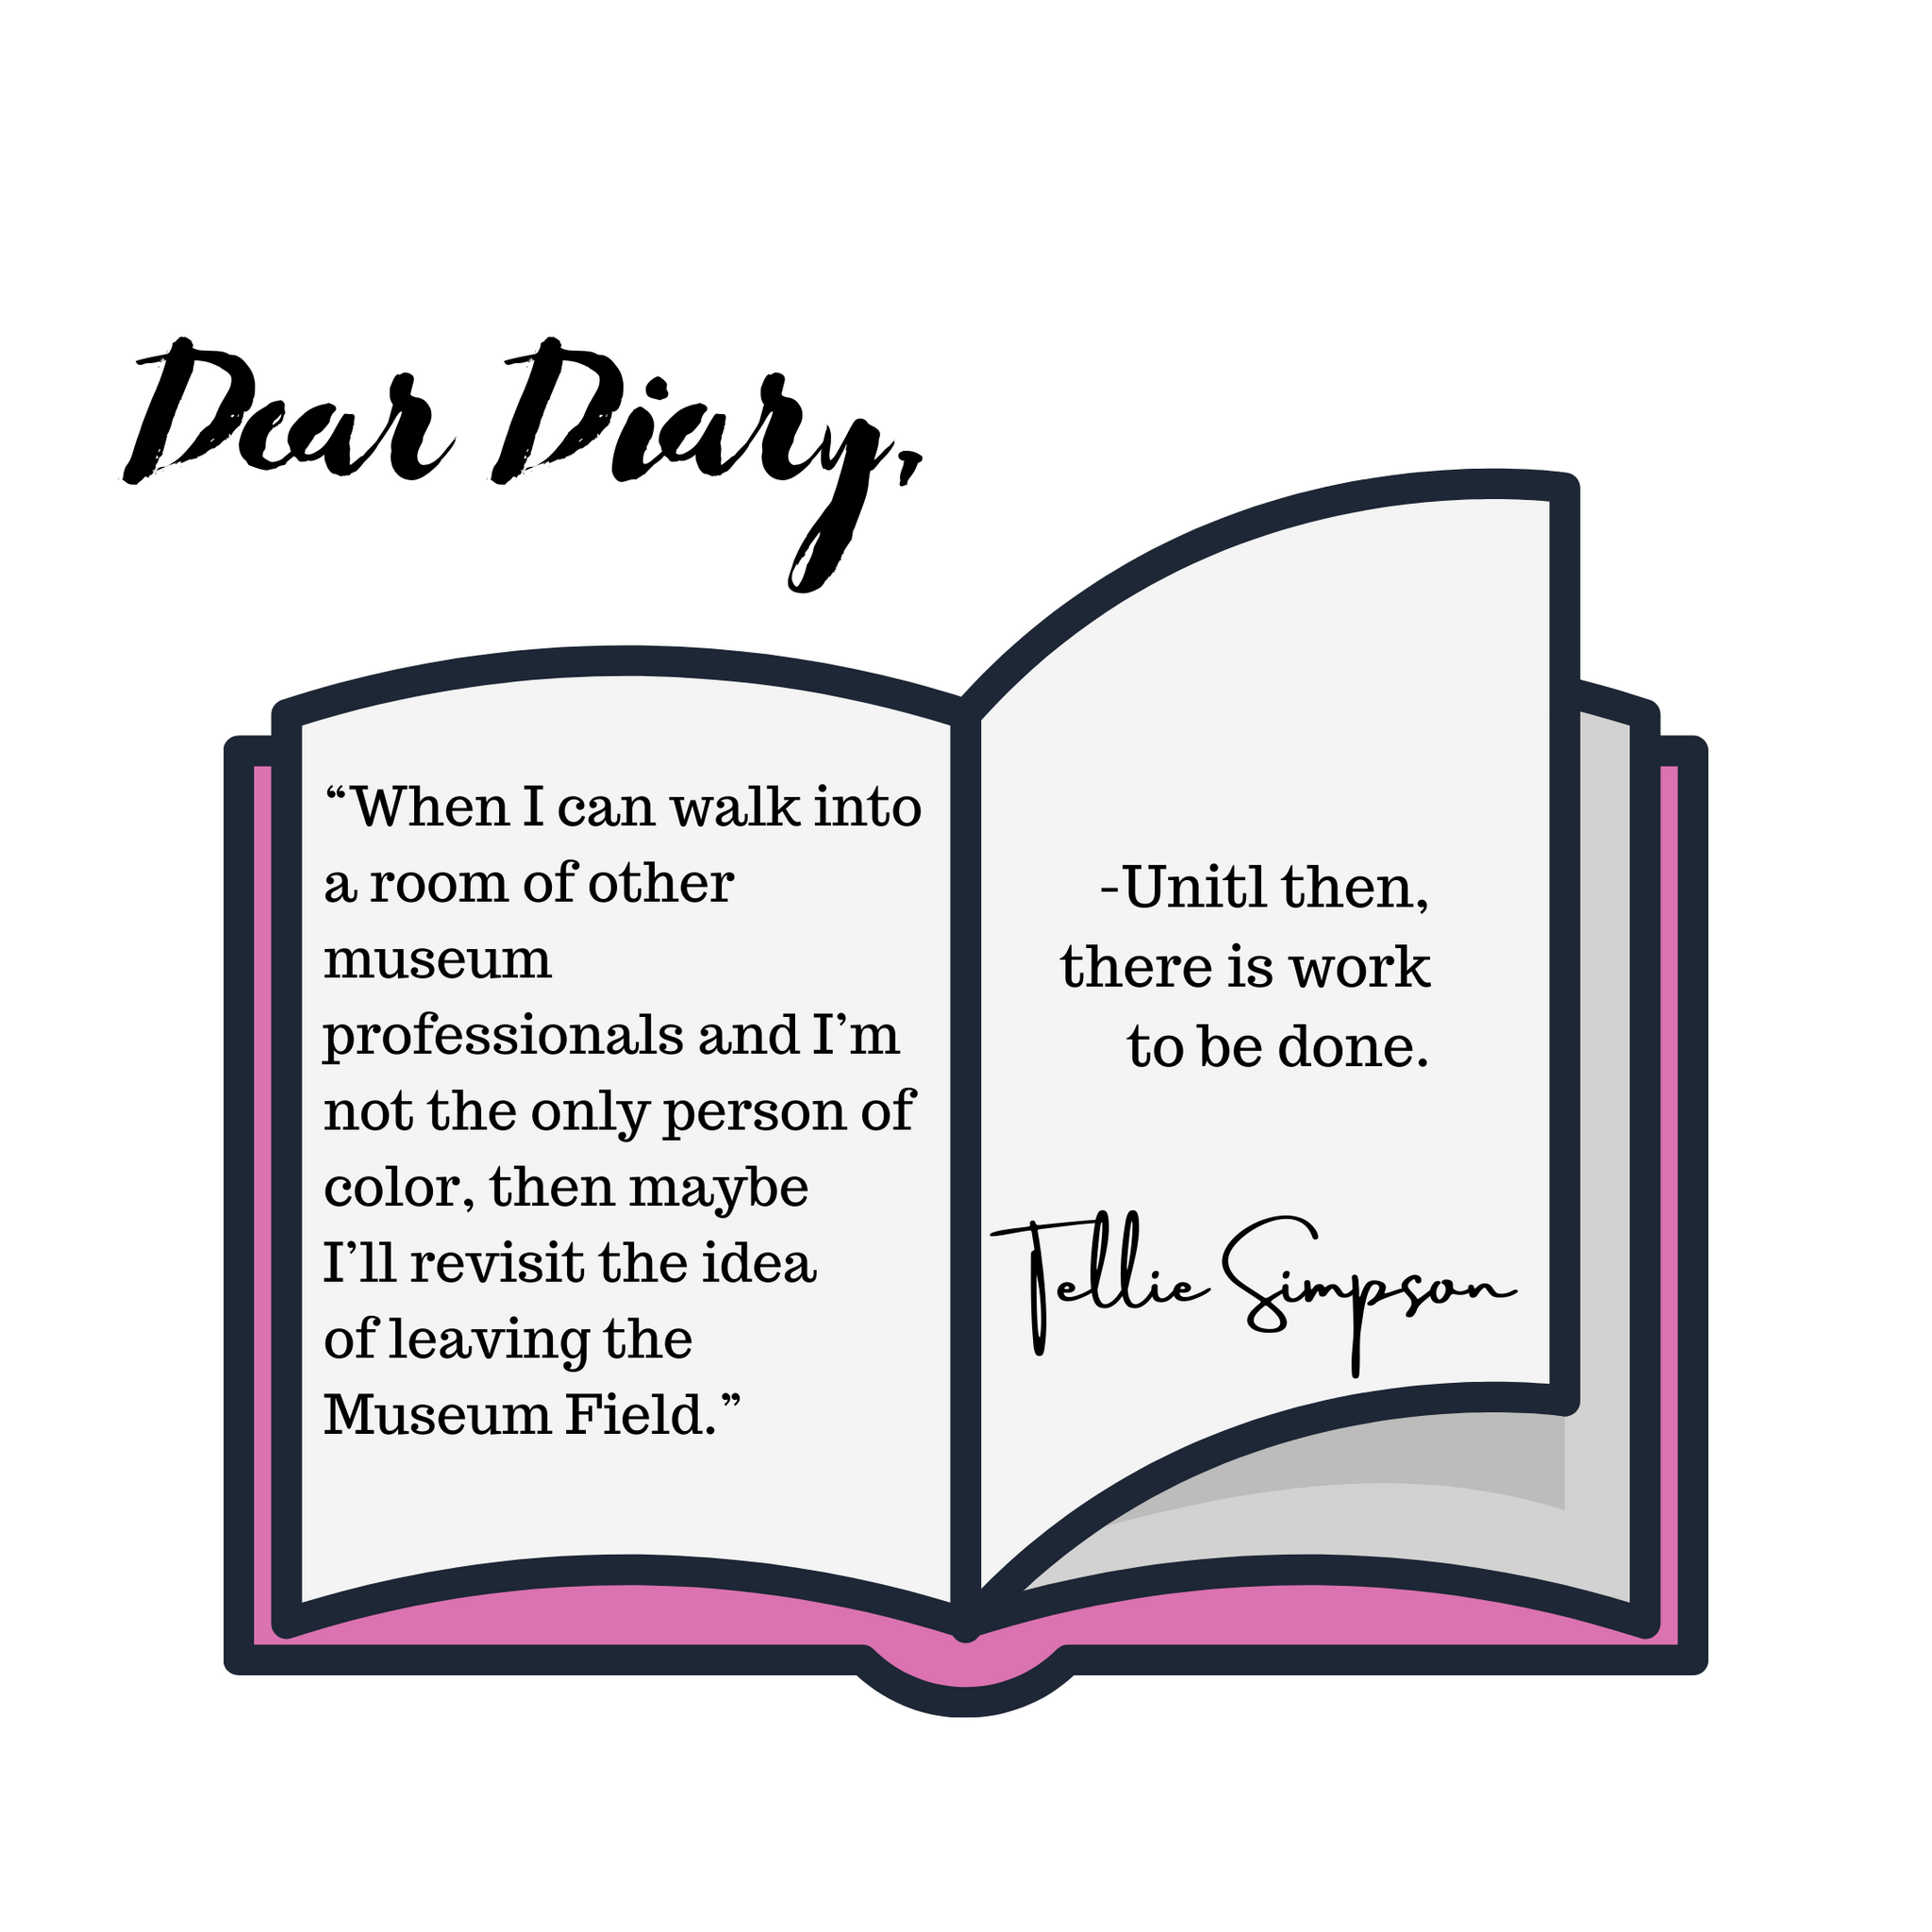 Dear Diary,